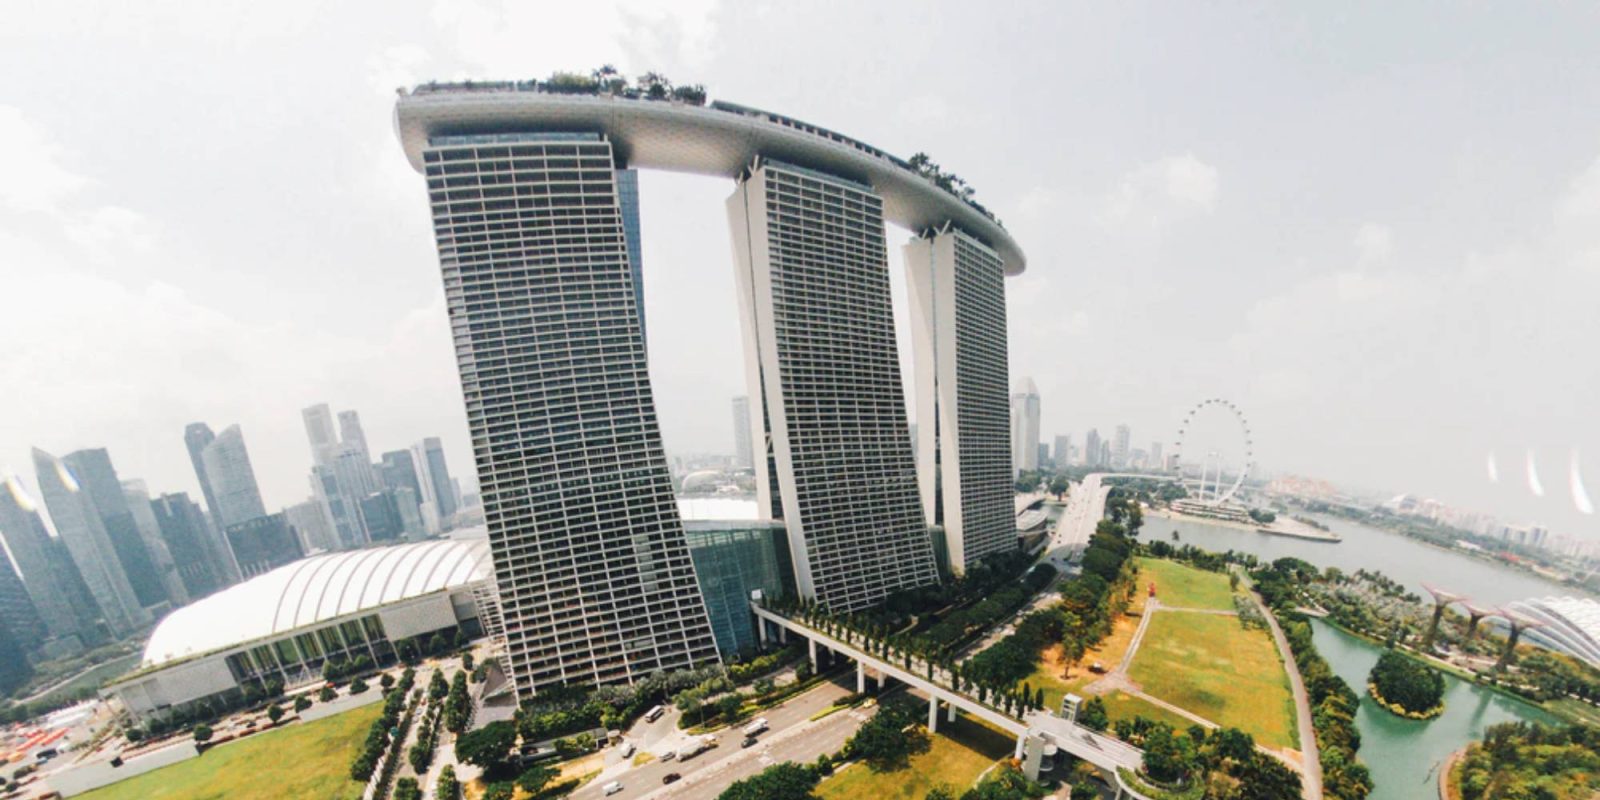 Singapore aren't residential drones